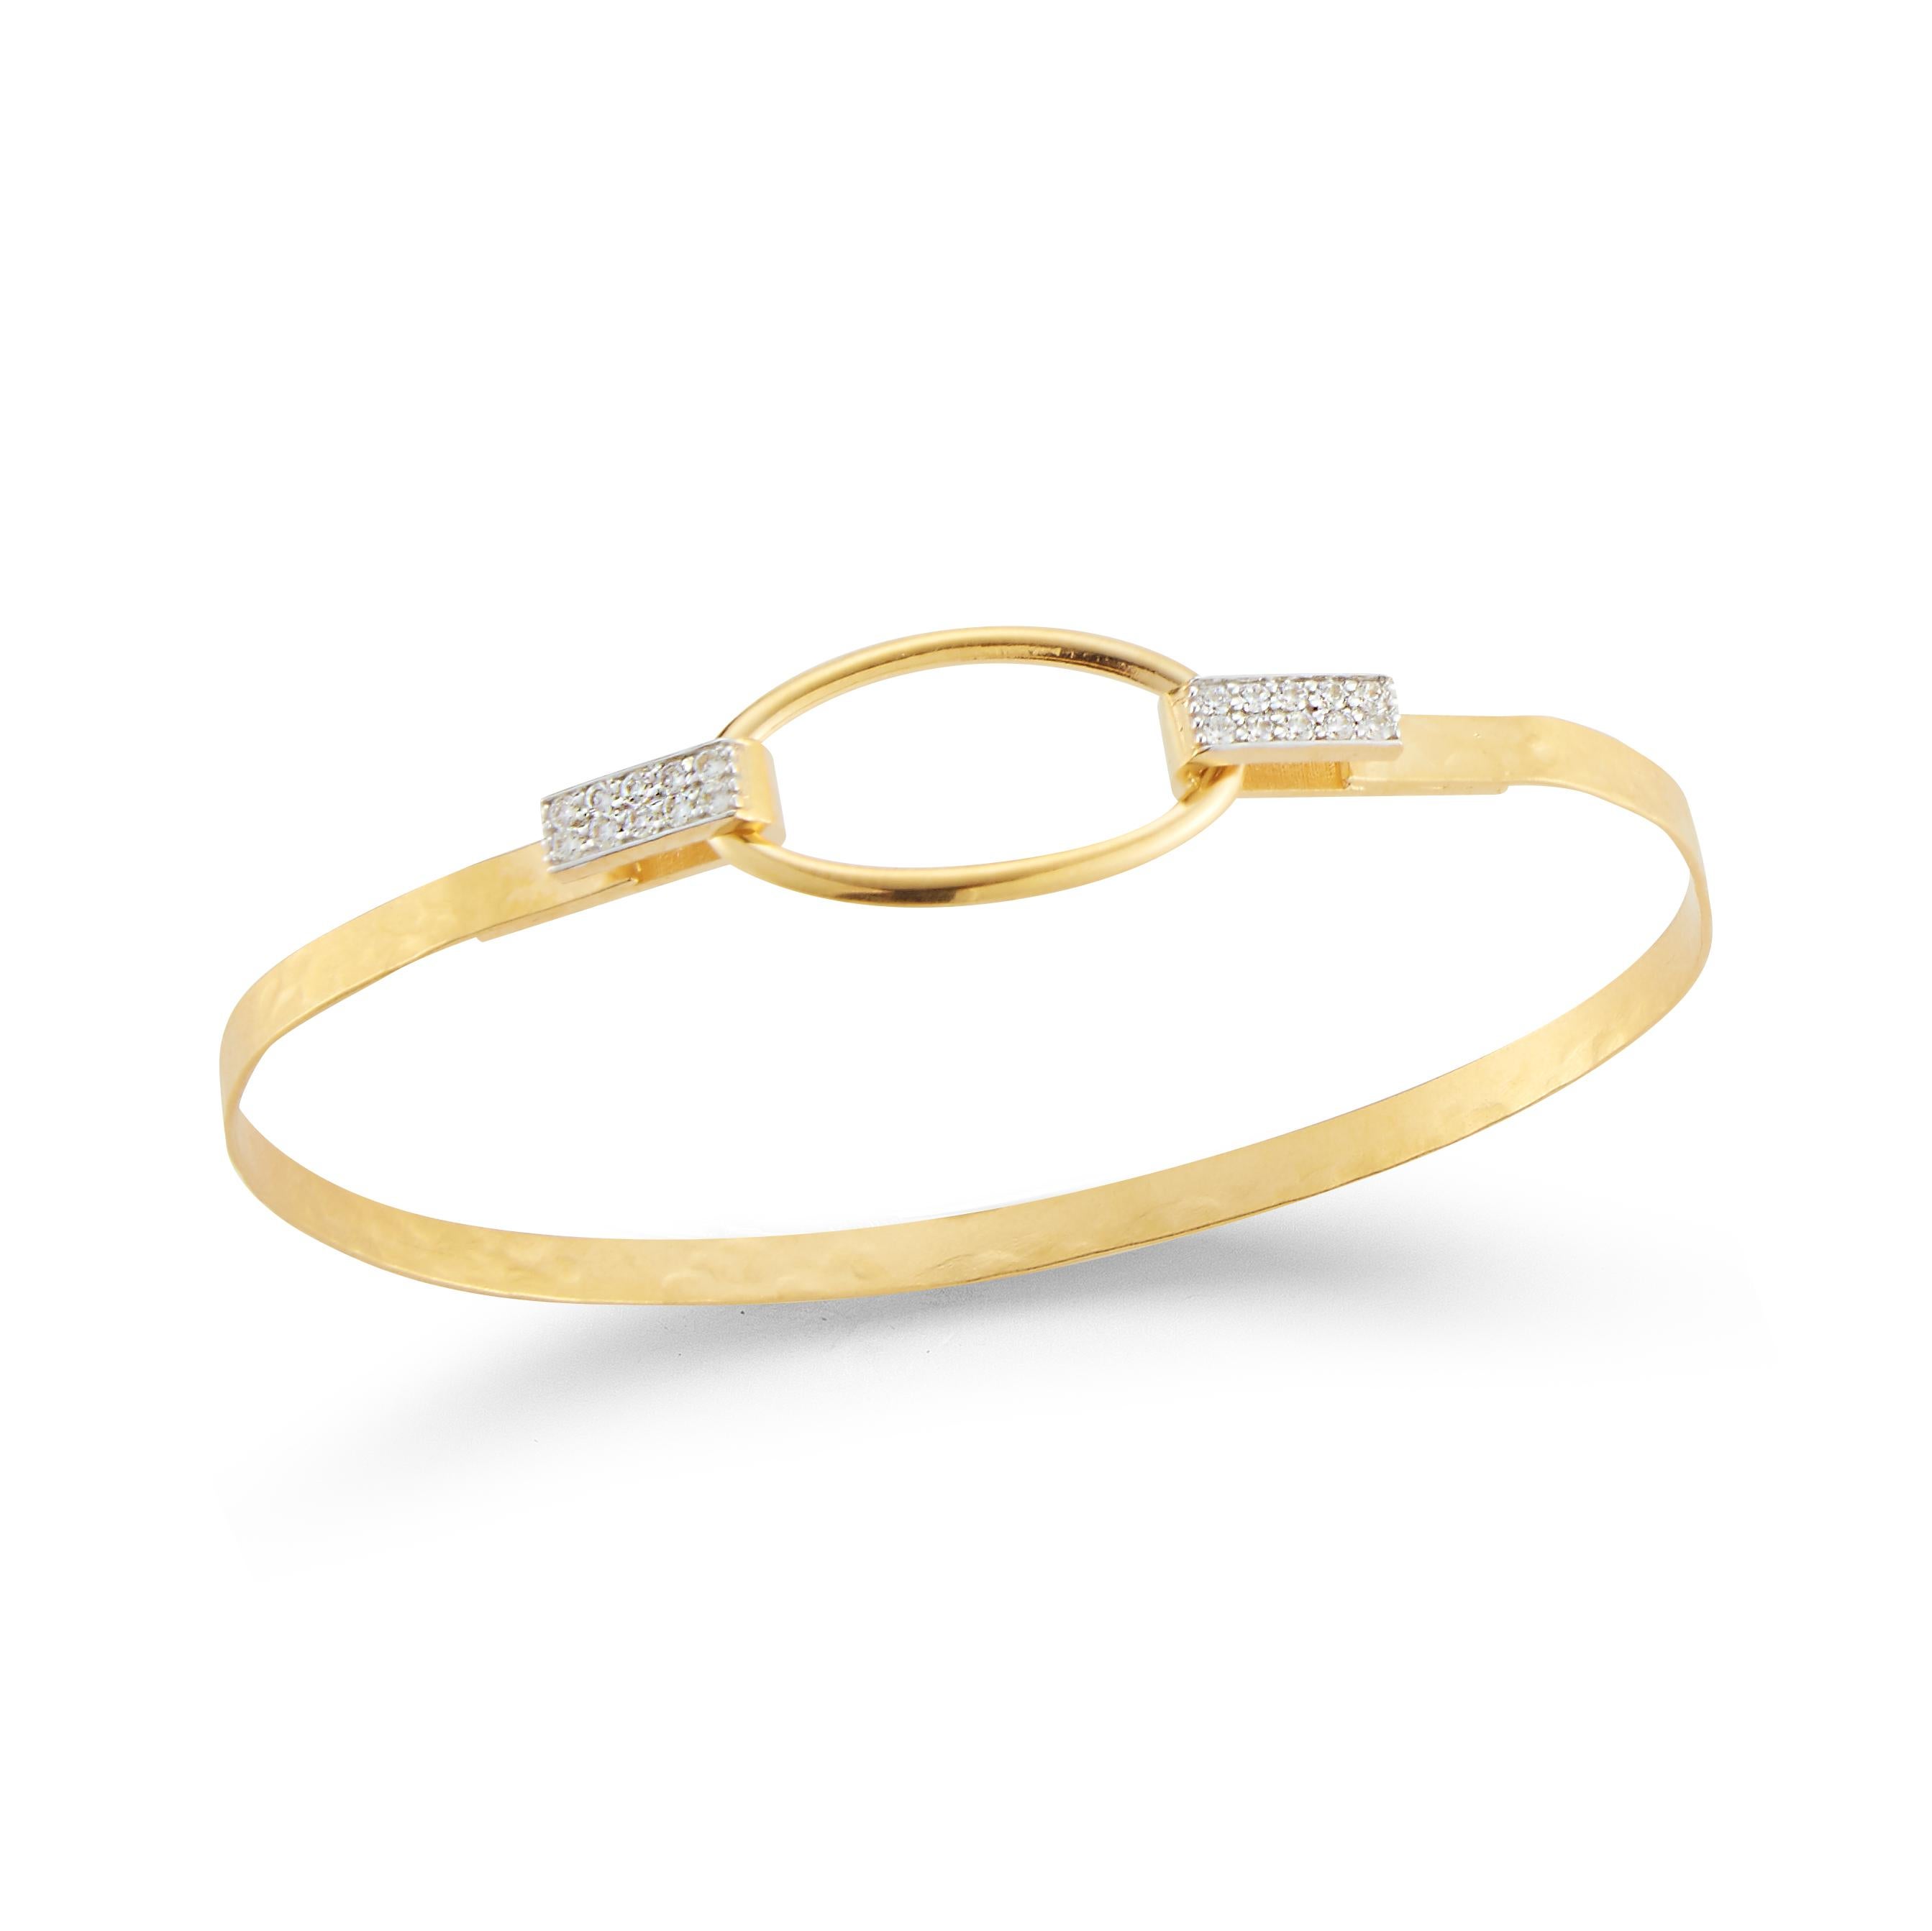 bracelet en or jaune 14 carats, fabriqué à la main, en forme de bague ovale ouverte de 4 mm, martelée et polie, agrémenté de 0,16 carats de diamants sertis en pavé.
